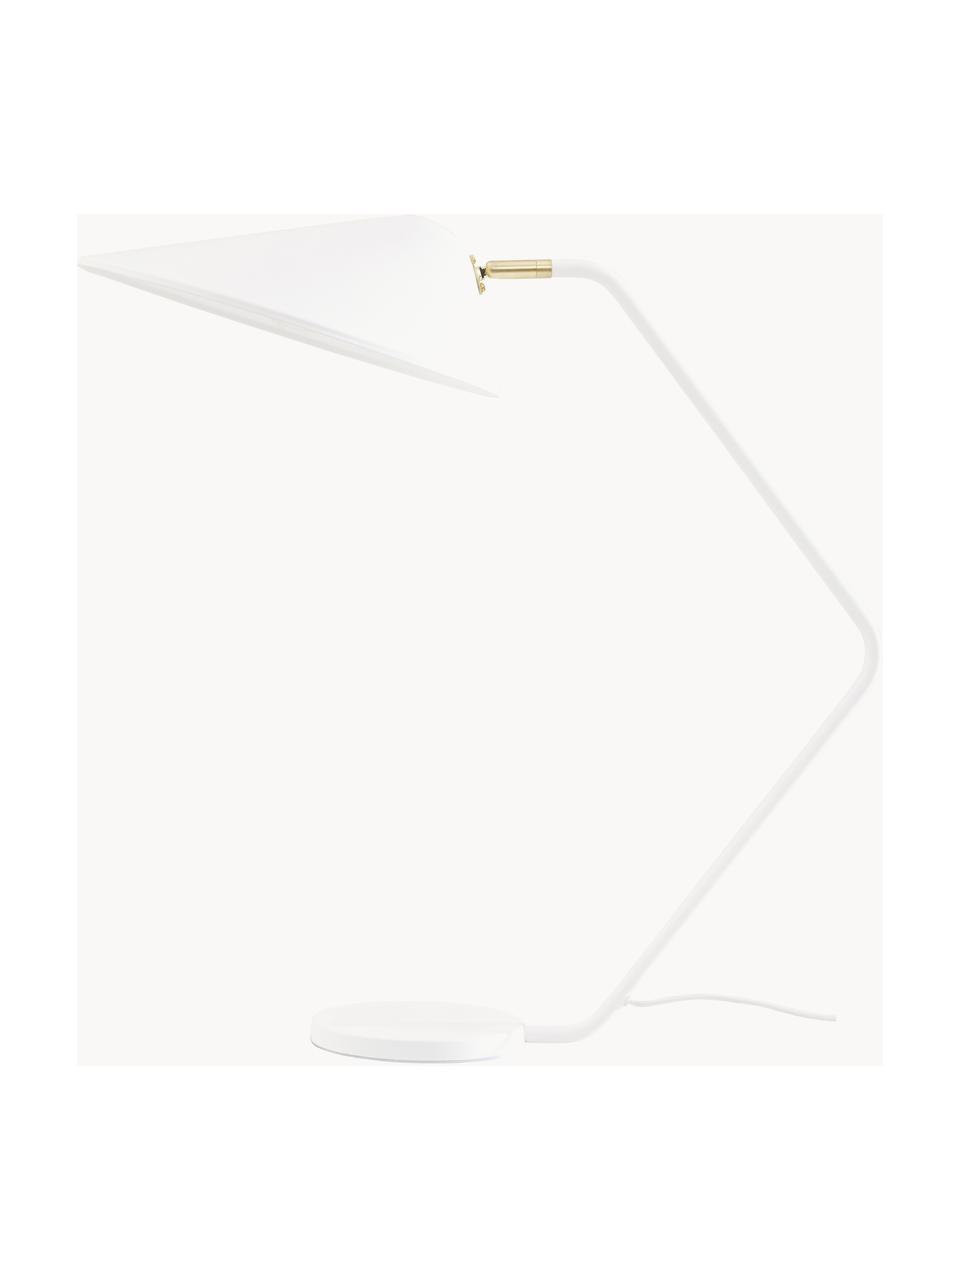 Große Schreibtischlampe Neron, Dekor: Metall, vermessingt, Weiß, B 57 x H 56 cm